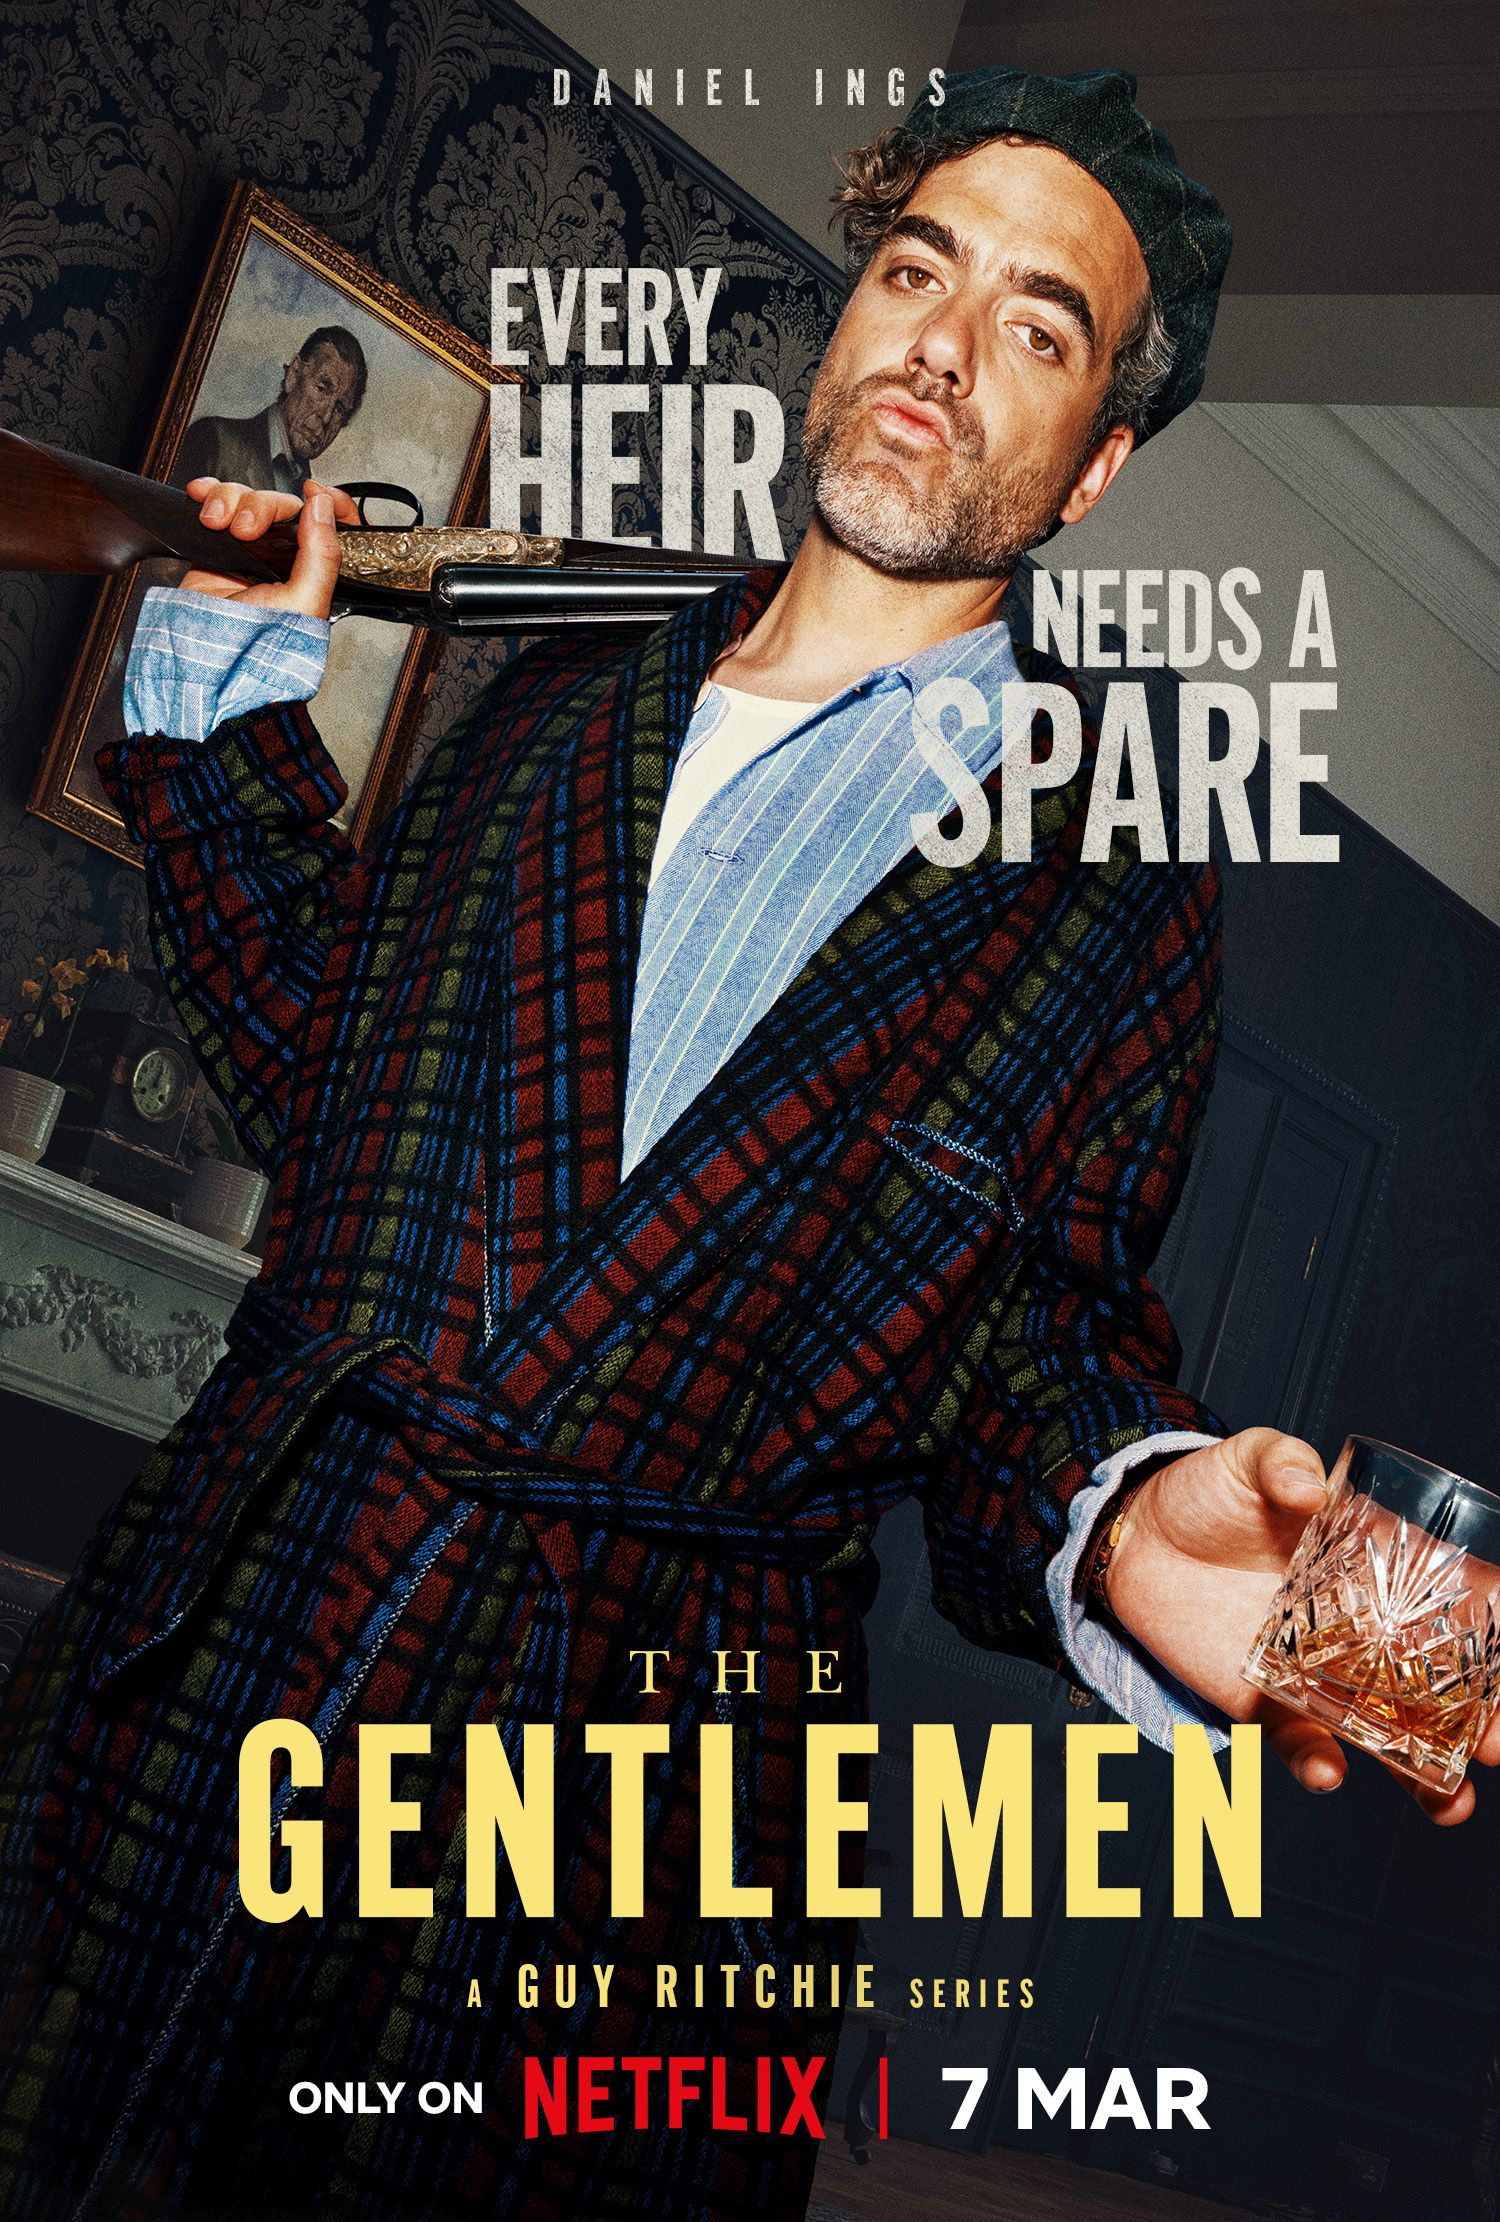 Guy Ritchie's The Gentlemen Spinoff Gets Netflix Release Date